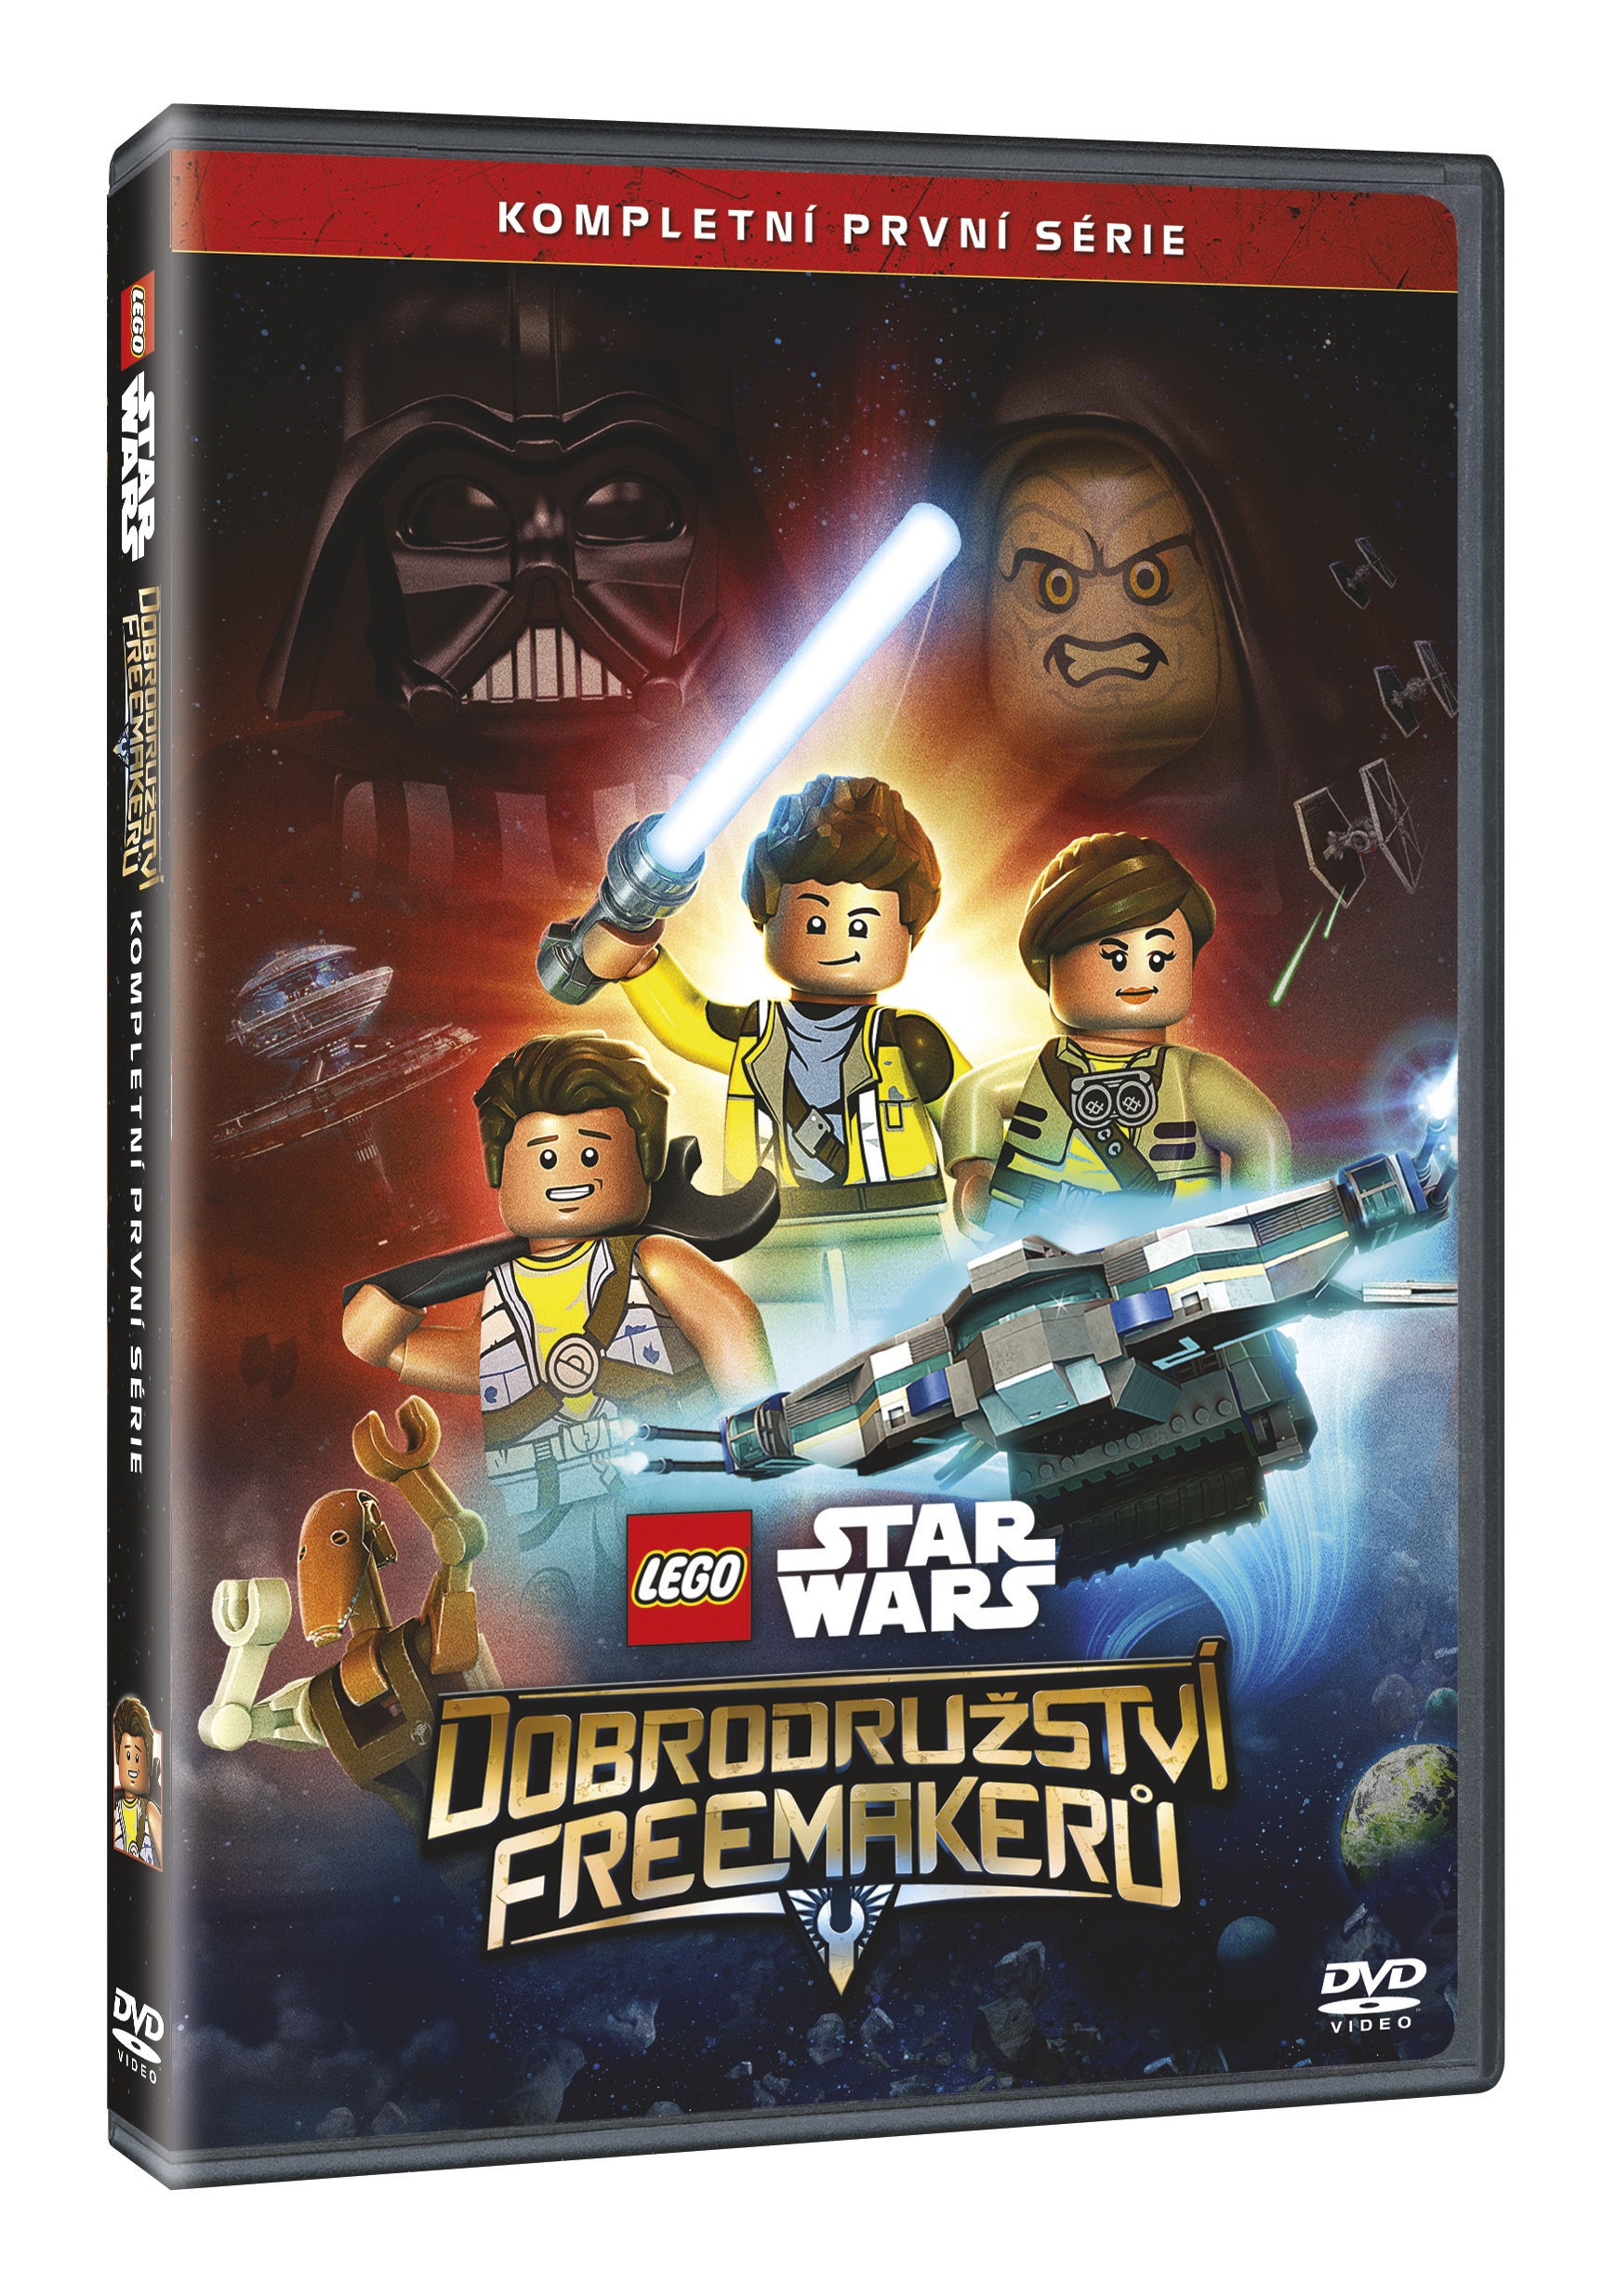 Lego Star Wars: Dobrodruzstvi Freemakeru 1. serie 2DVD / LEGO Star Wars: The Freemaker Adventures